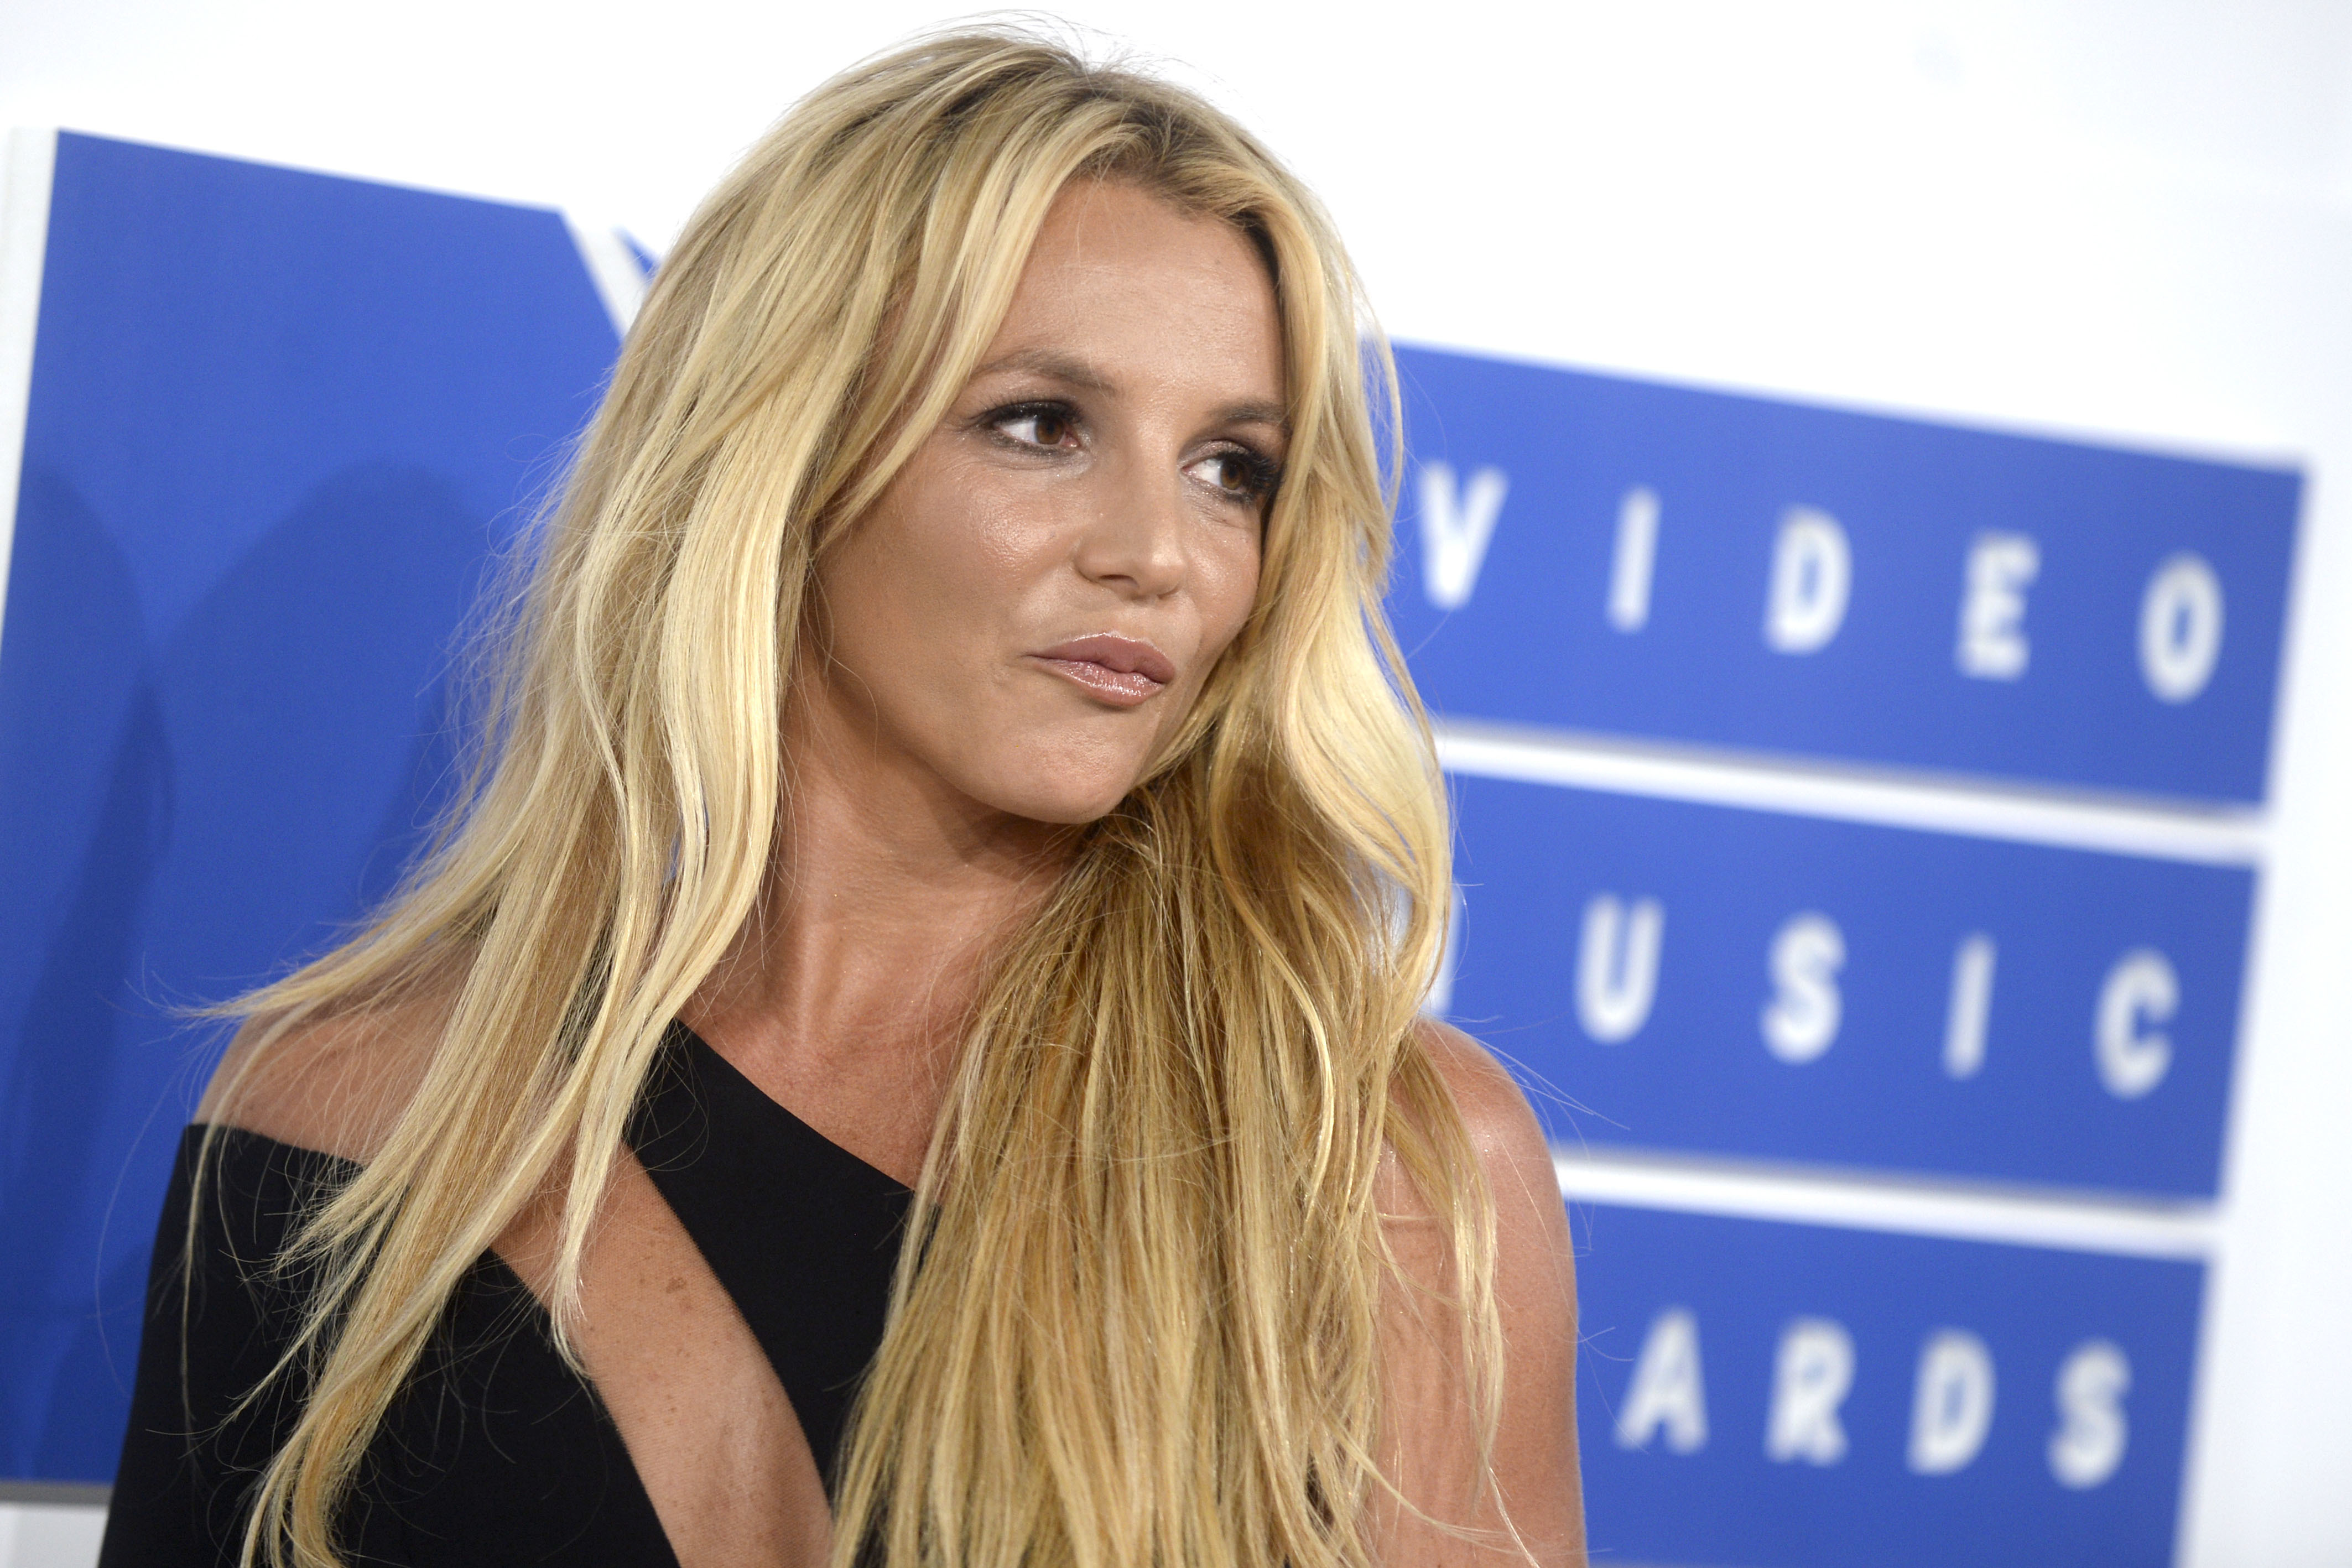 Britney Spears poste une photo de ses chaussures et s'attire la colère des internautes